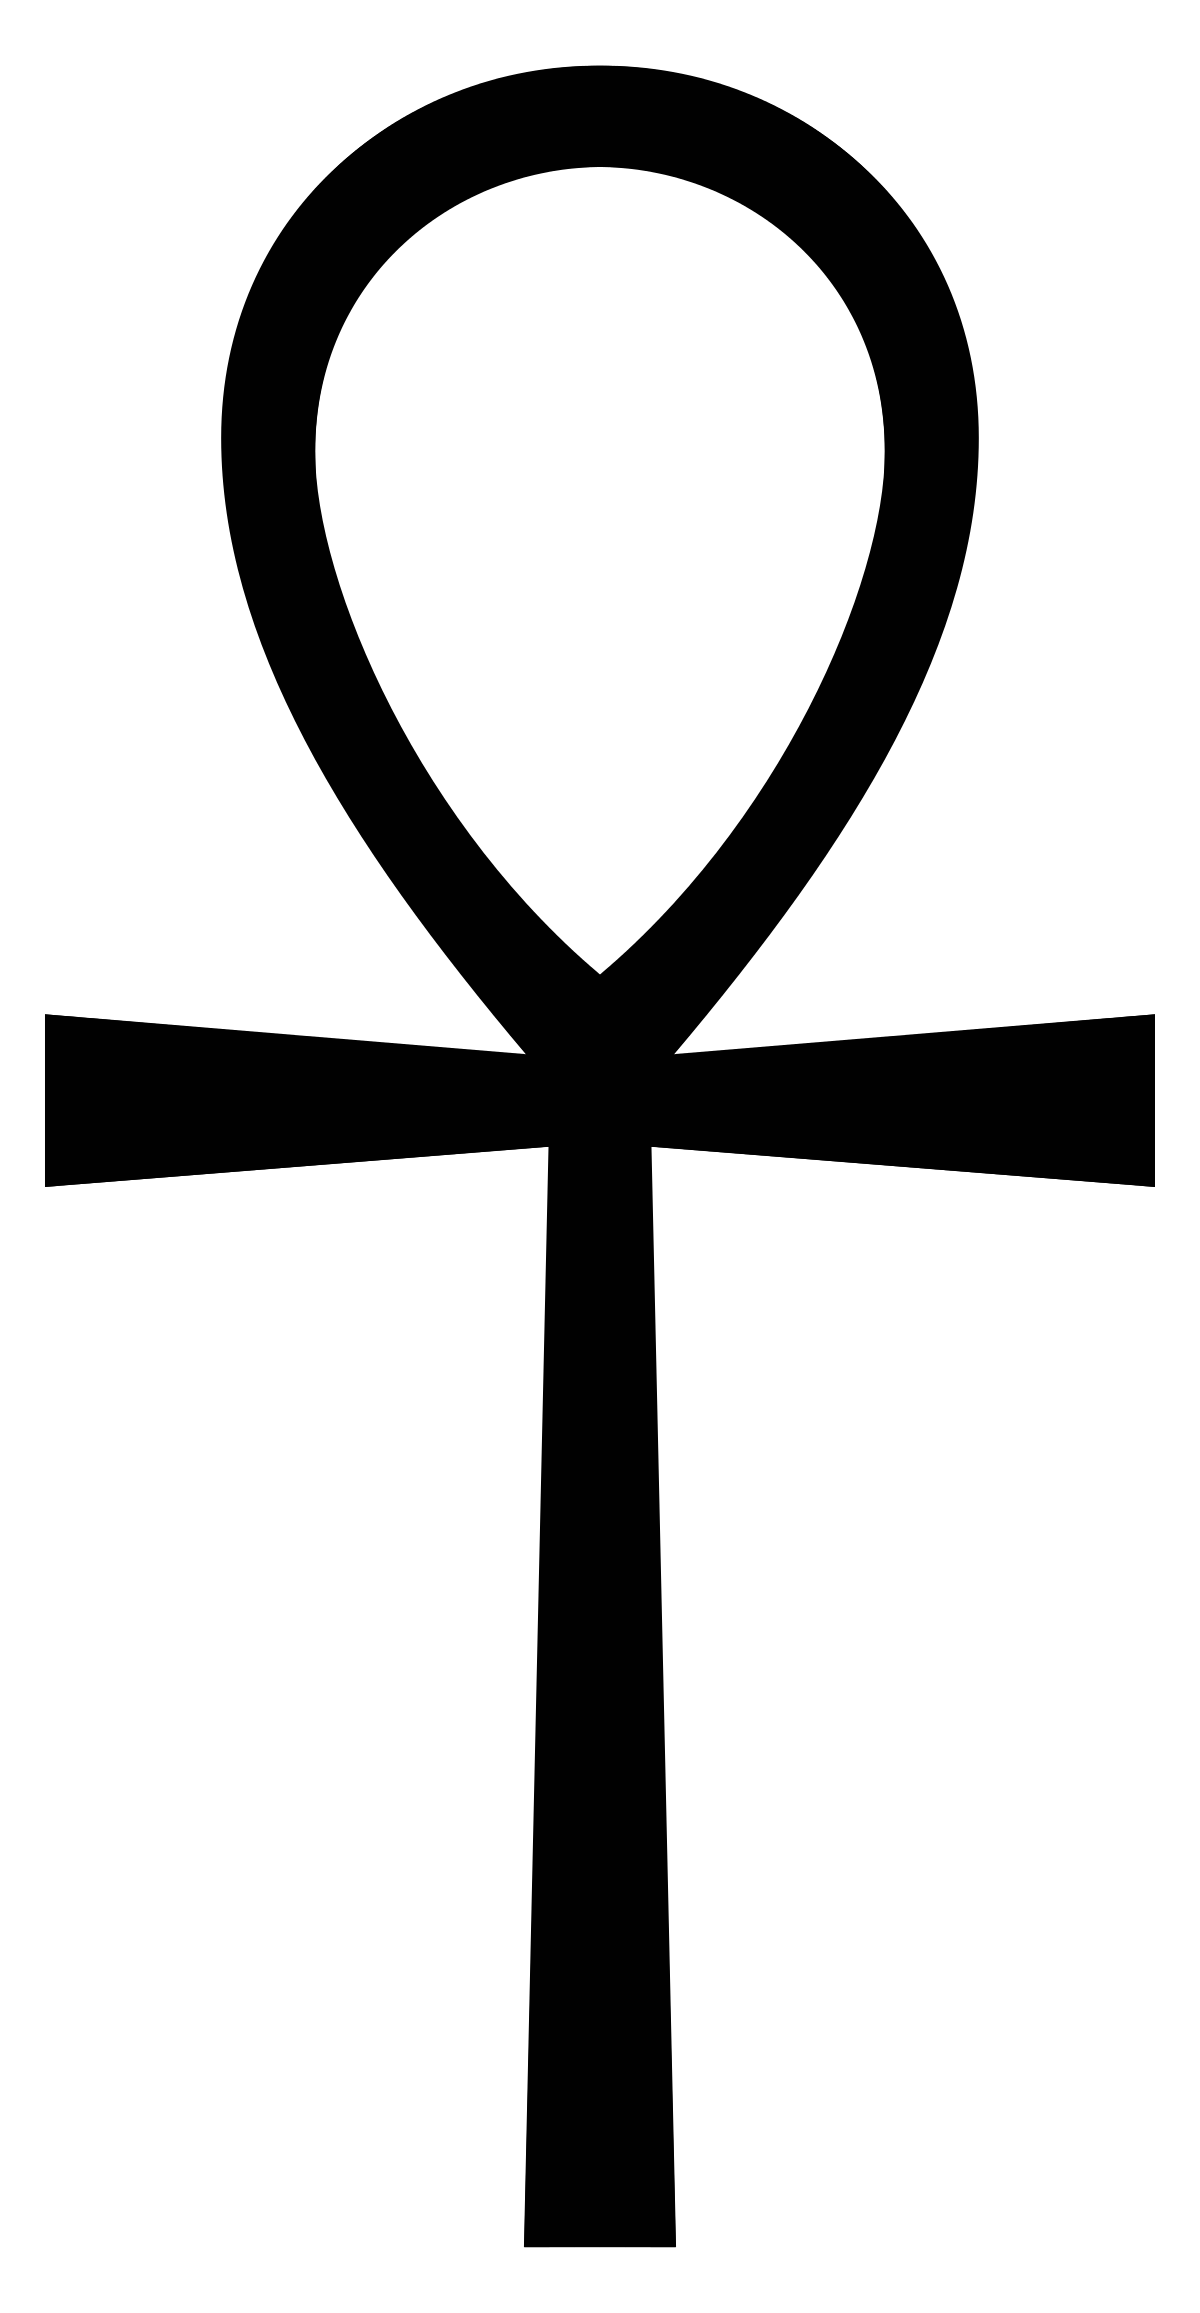 Ankh symbol.